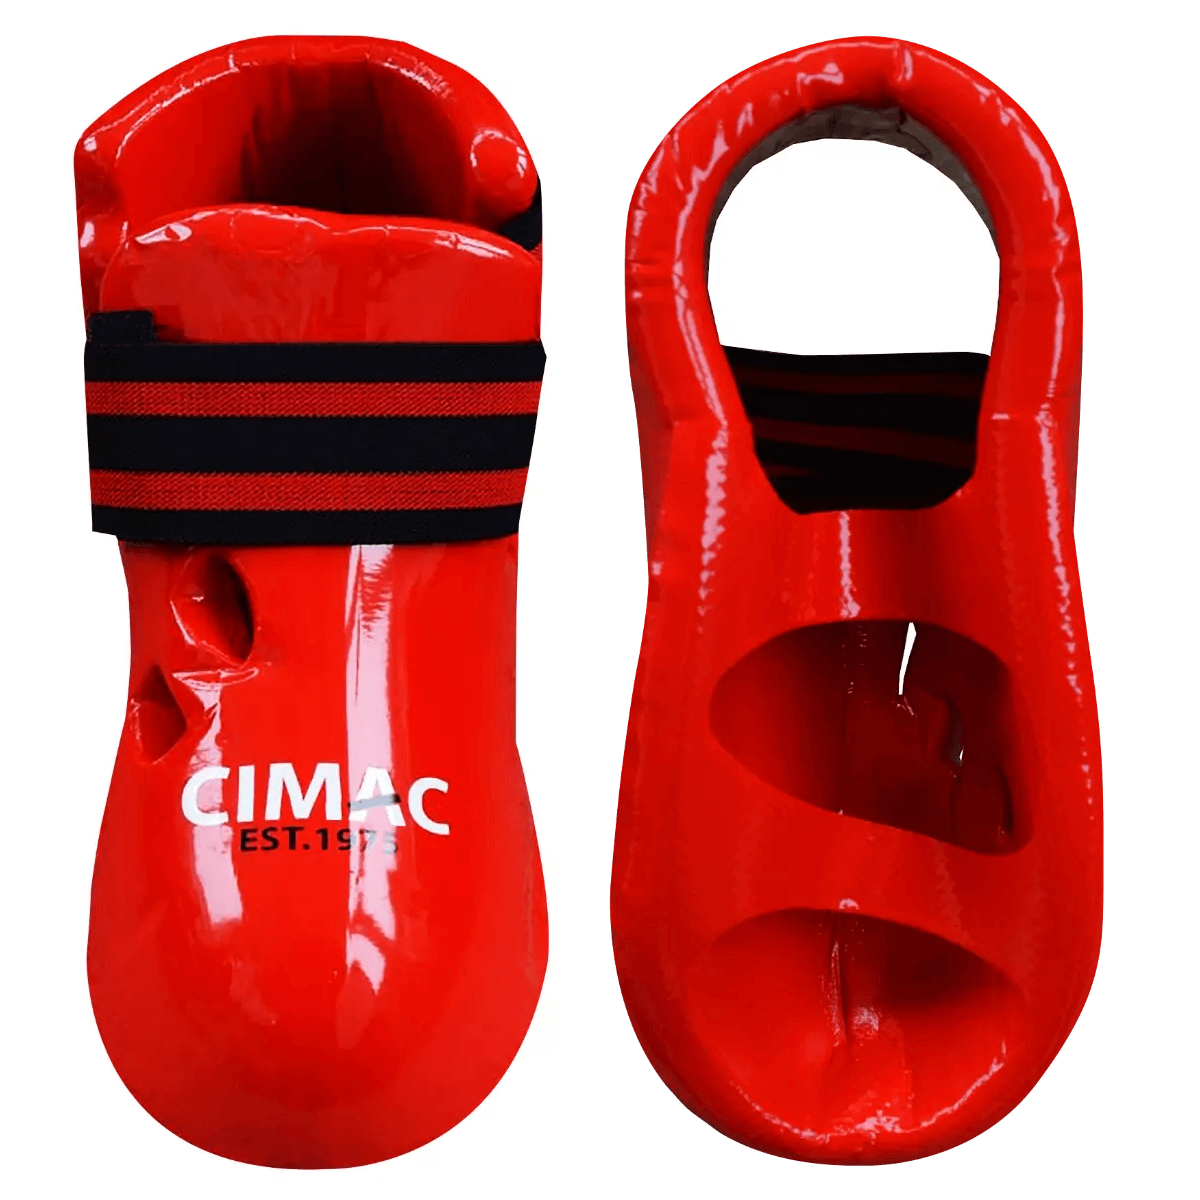 Cimac Dipped Foam Foot Guards Martial Arts Protectors